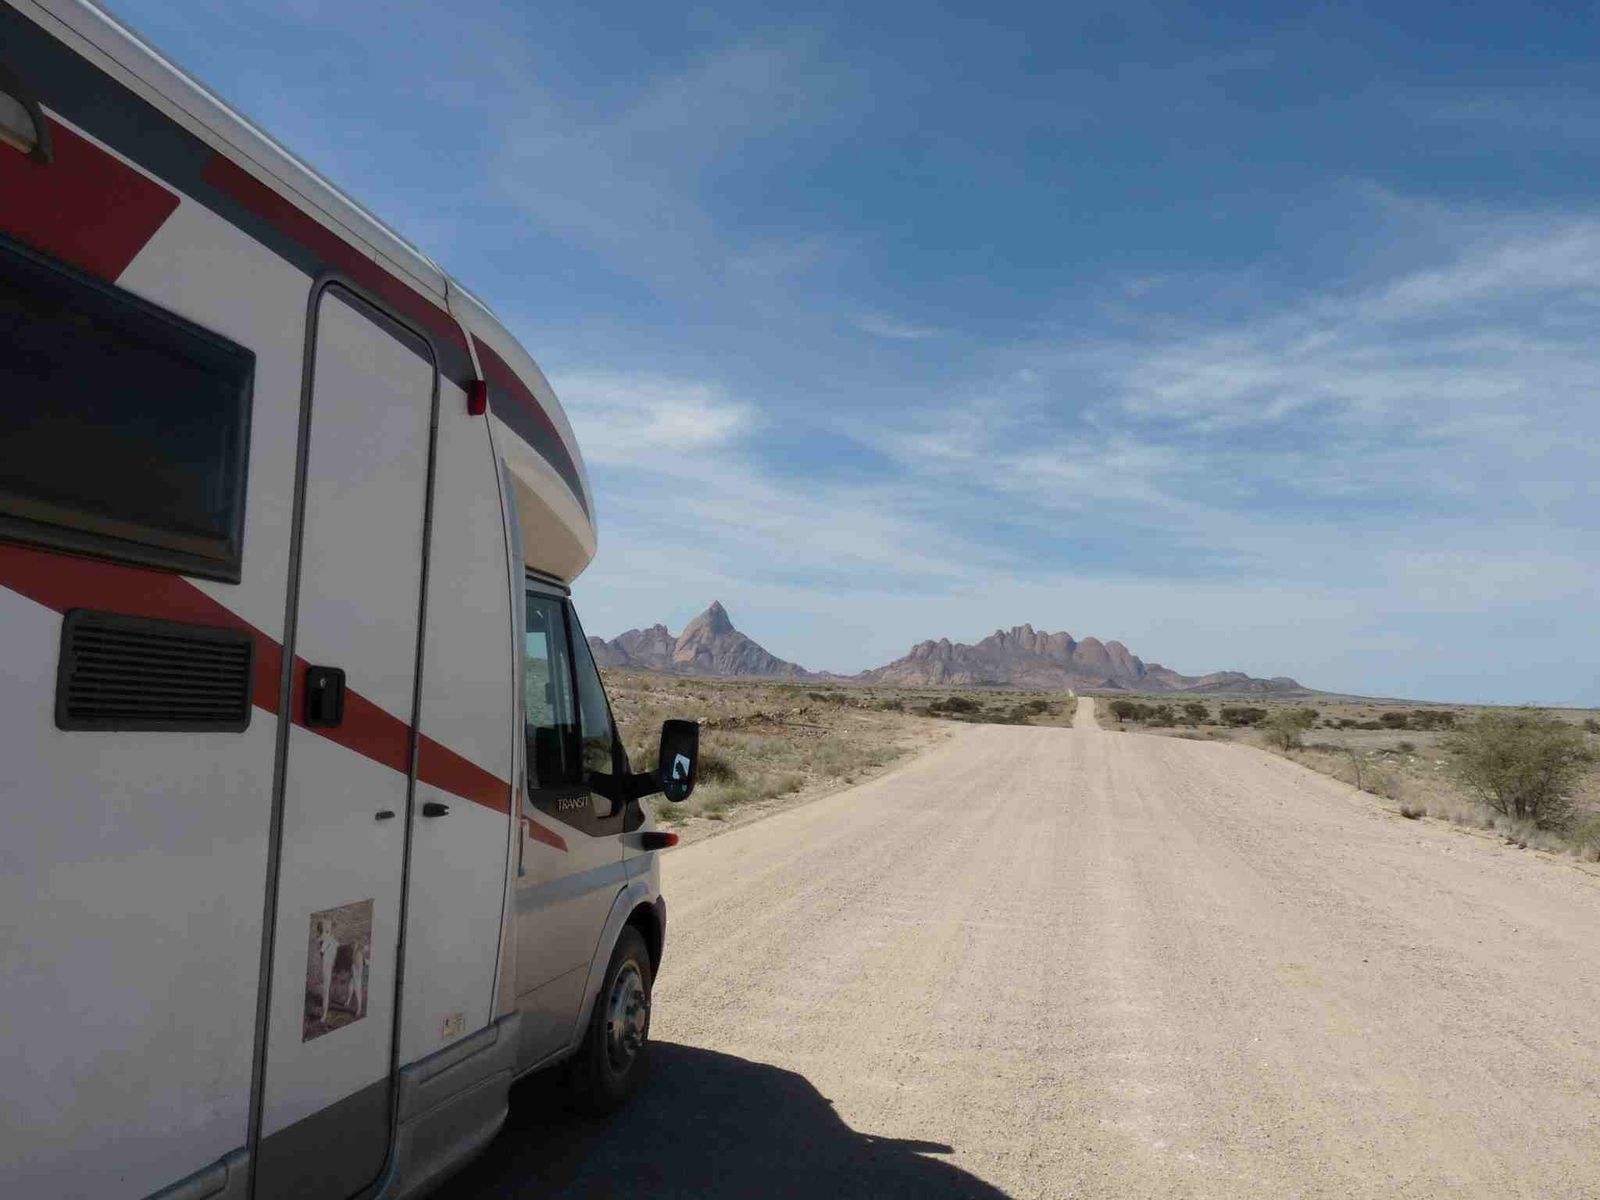 Départ de France en camping-car, arrivée en Namibie 10 mois + tard...